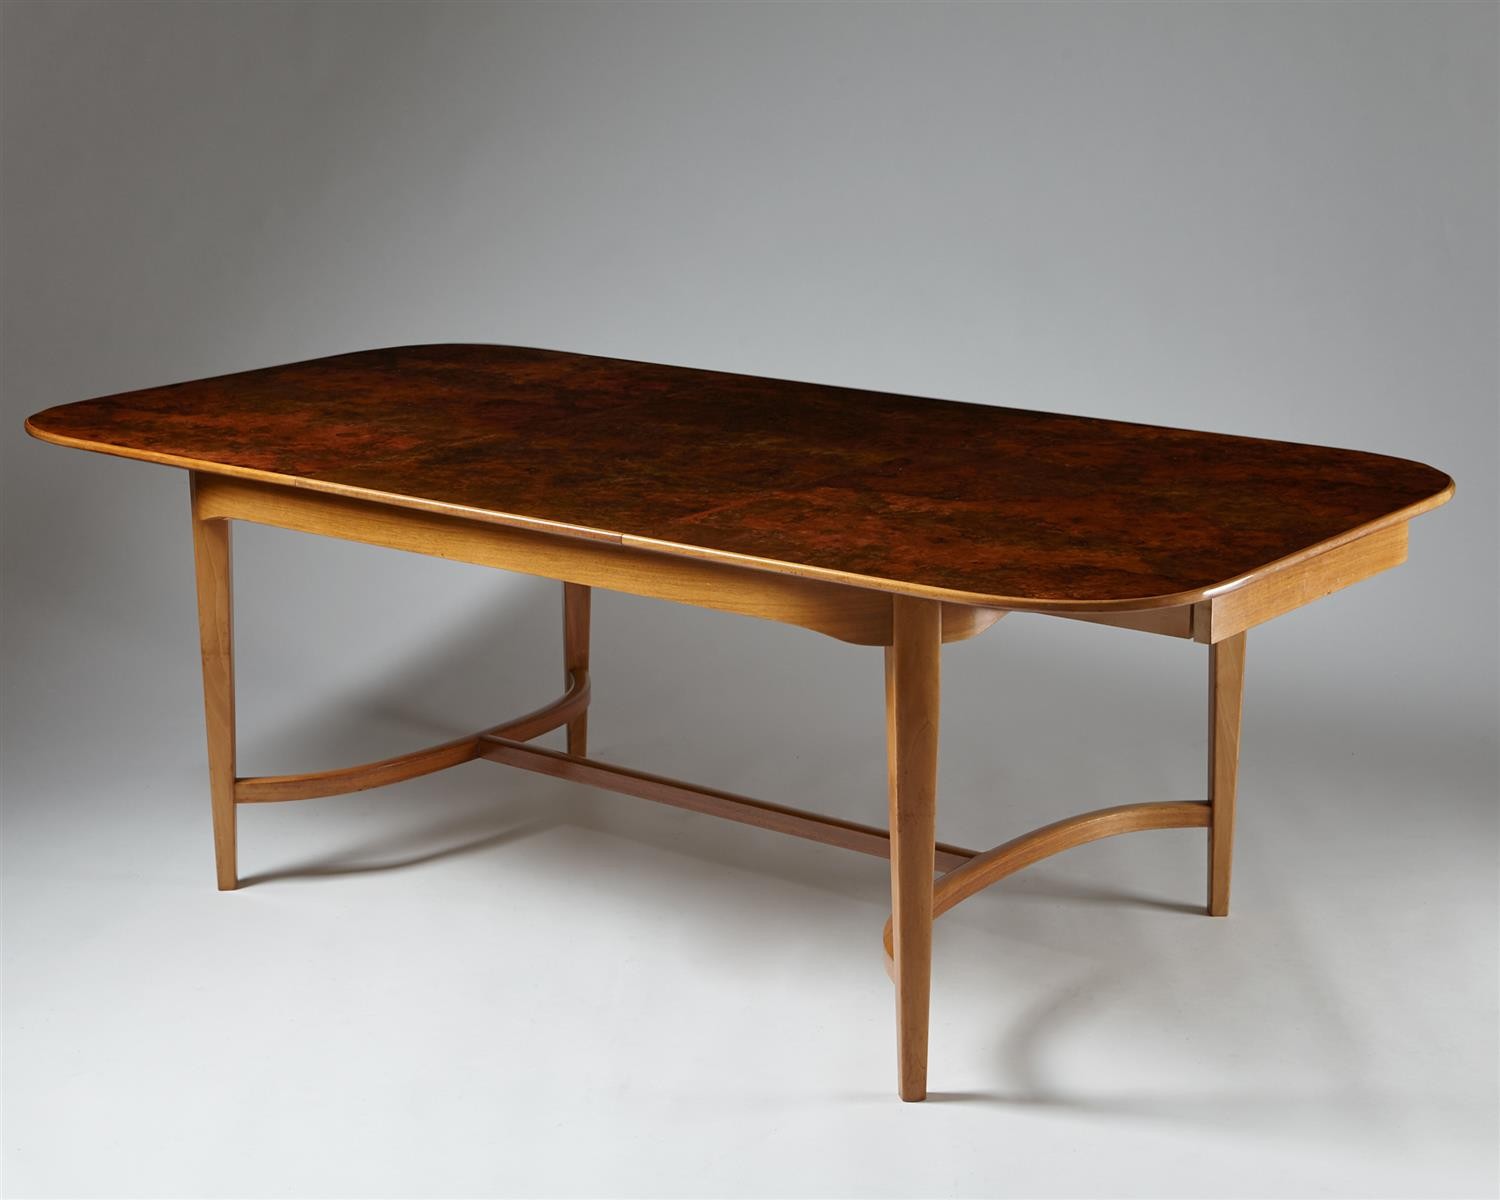 Dining table designed by Josef Frank for Svenskt Tenn, — Modernity